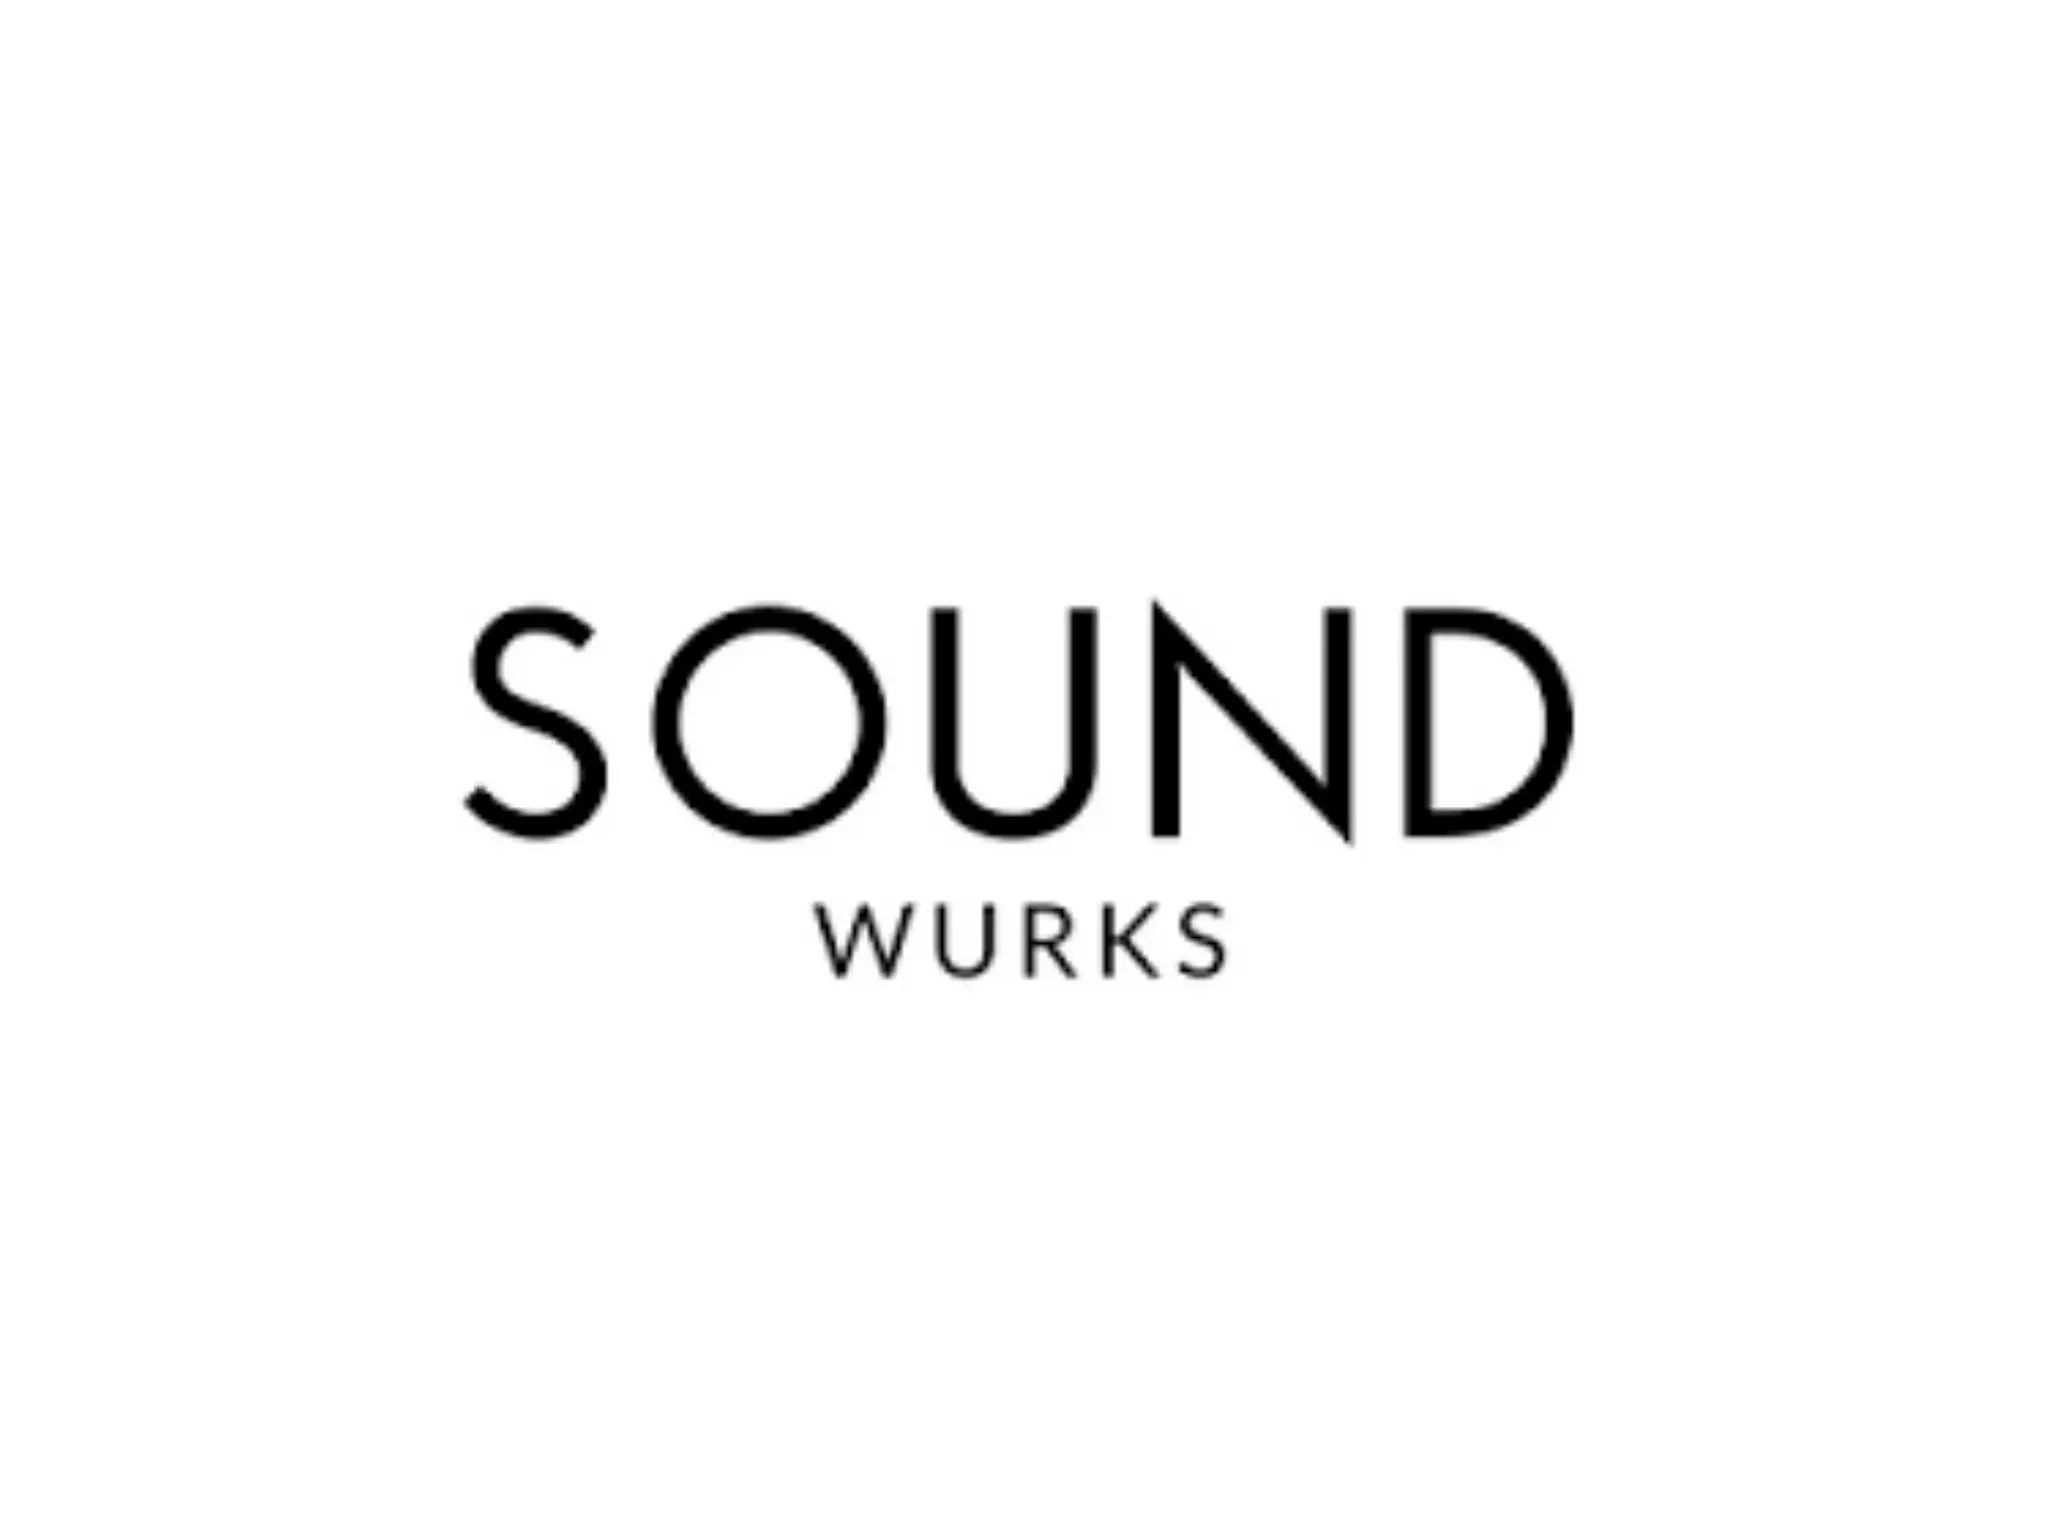 SOUND WURKS